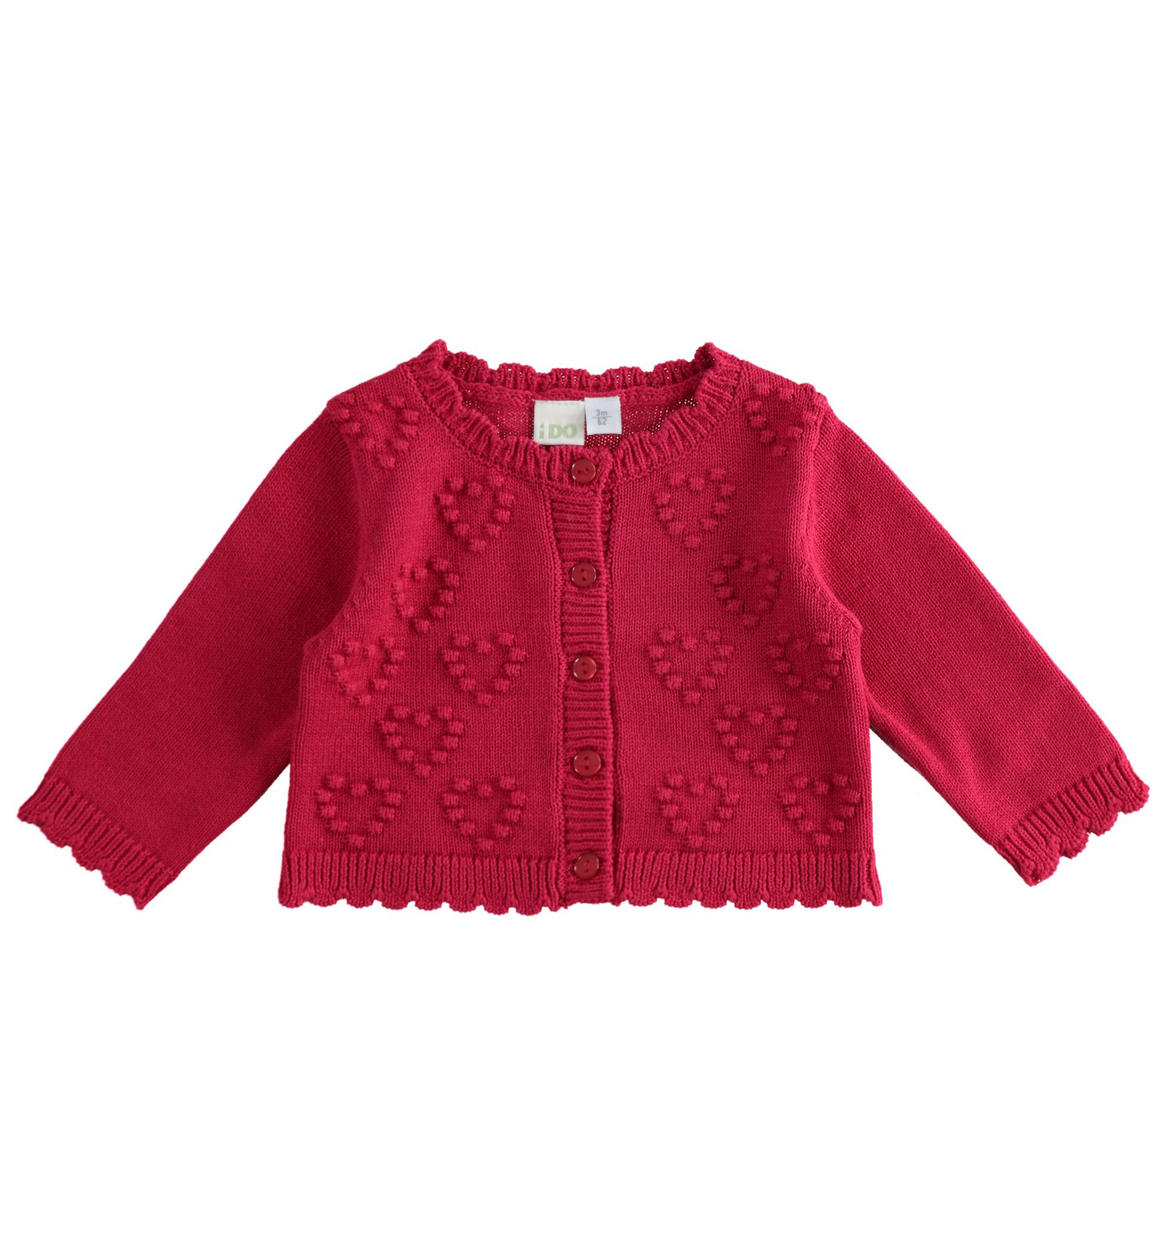 Cardigan neonata con cuori in tricot 100% cotone ROSSO iDO